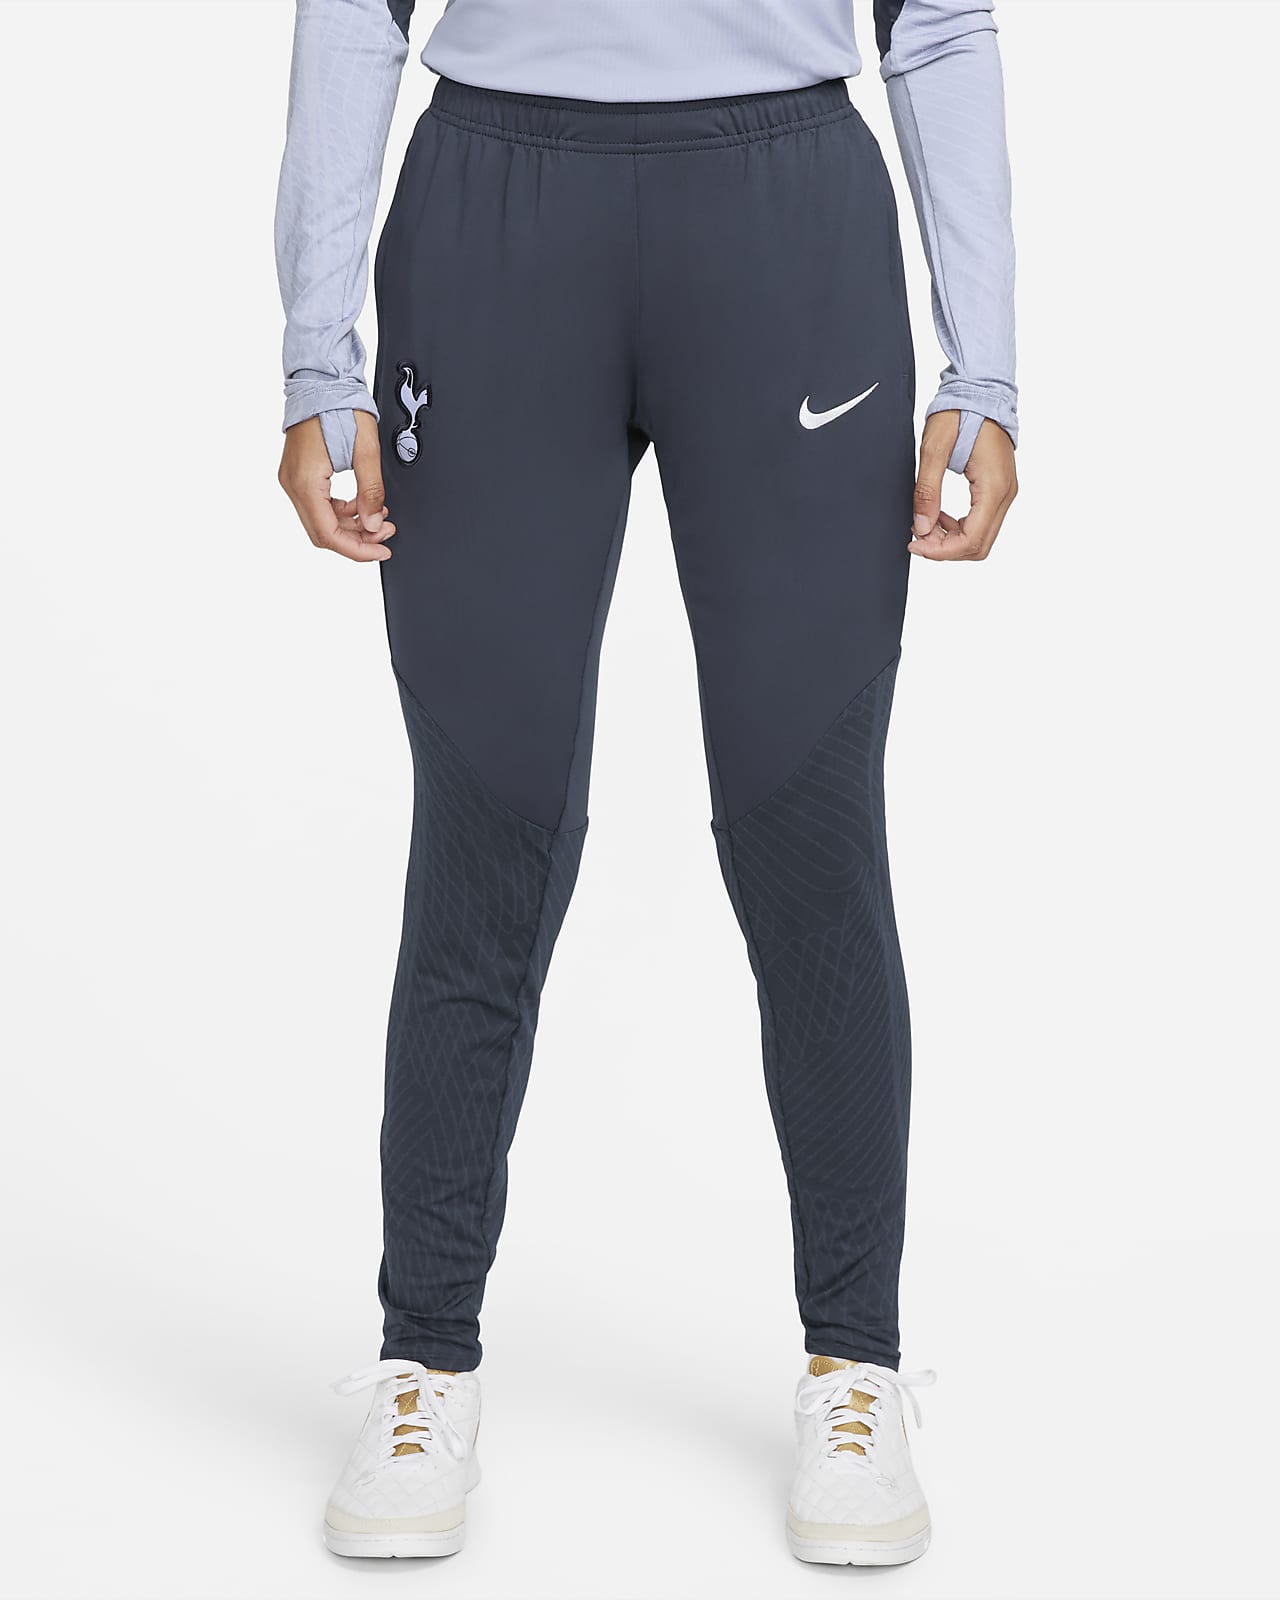 Γυναικείο πλεκτό ποδοσφαιρικό παντελόνι Nike Dri-FIT Τότεναμ Strike